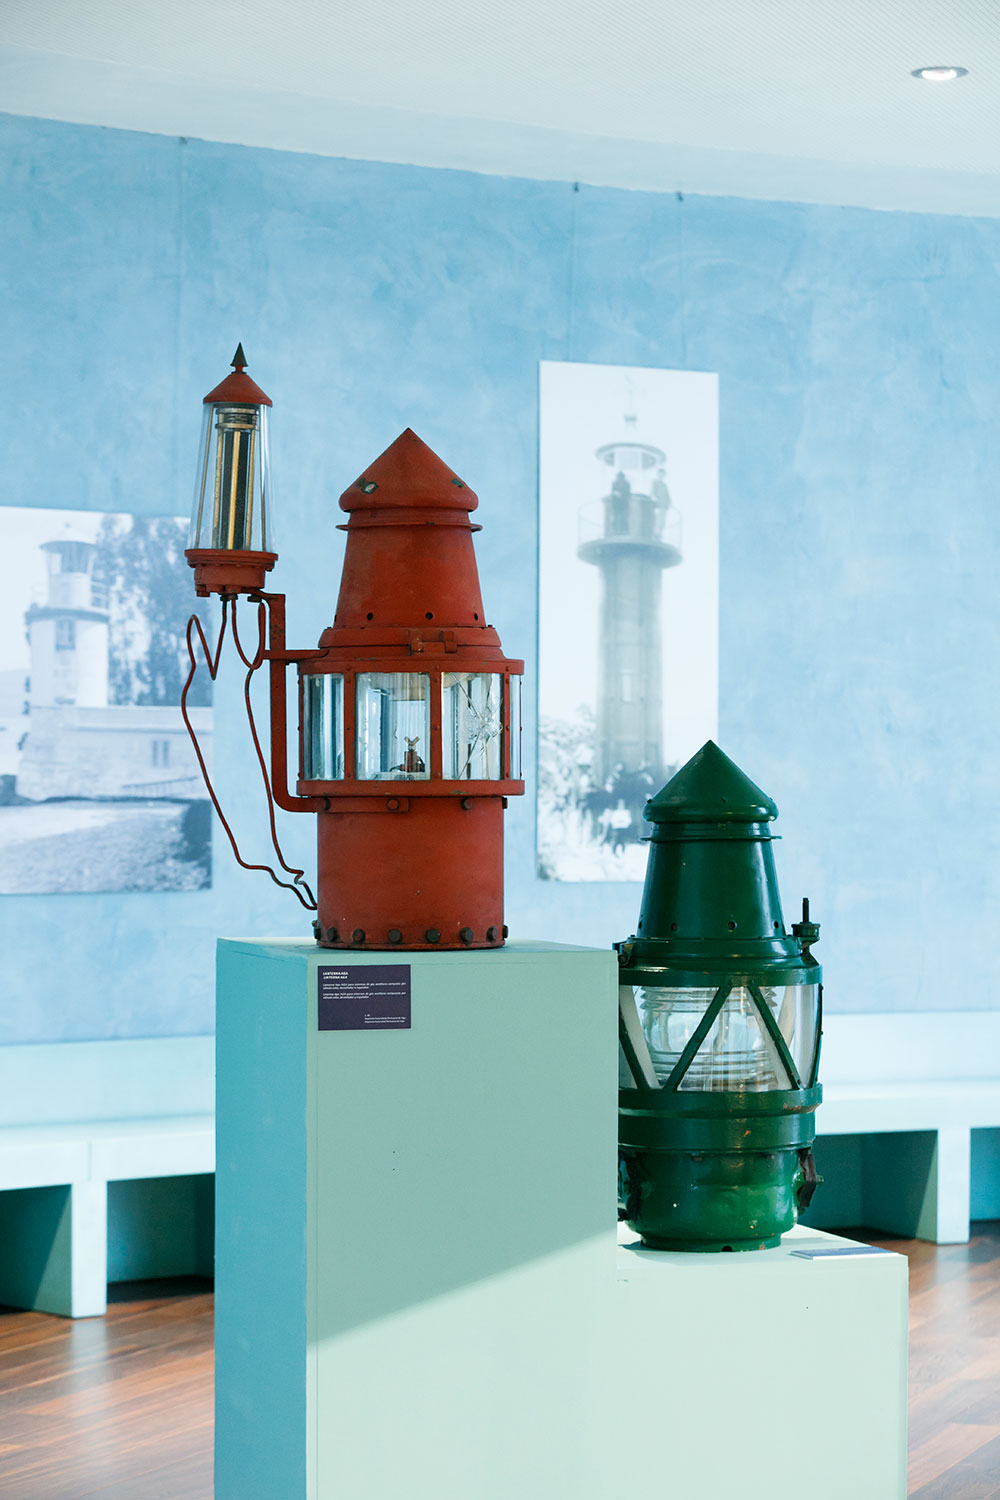 本館には、ガリシアの灯台について解説するセクションもある。